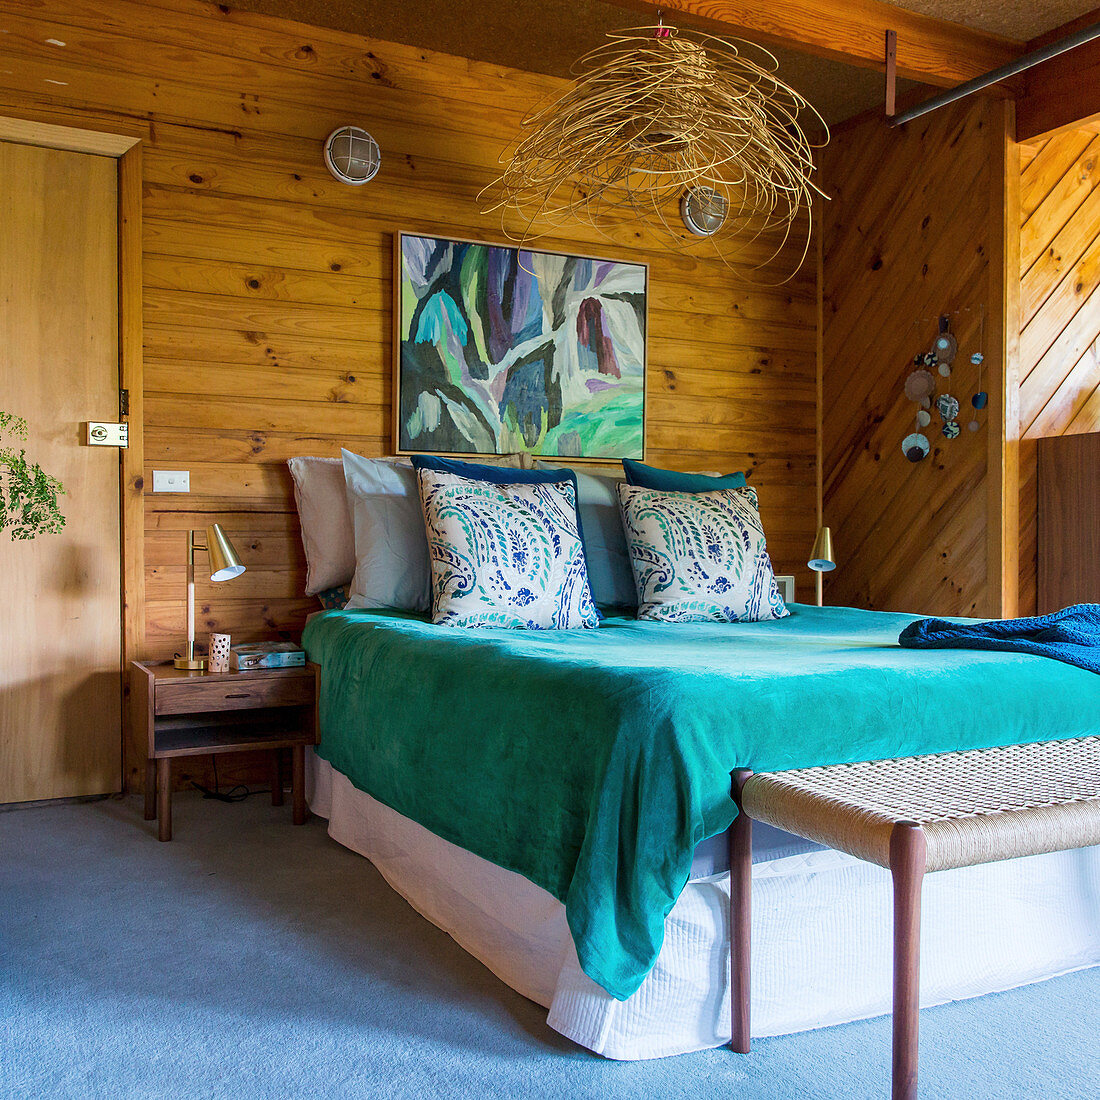 Doppelbett mit türkisfarbener Tagesdecke im Schlafzimmer mit Holzverkleidung